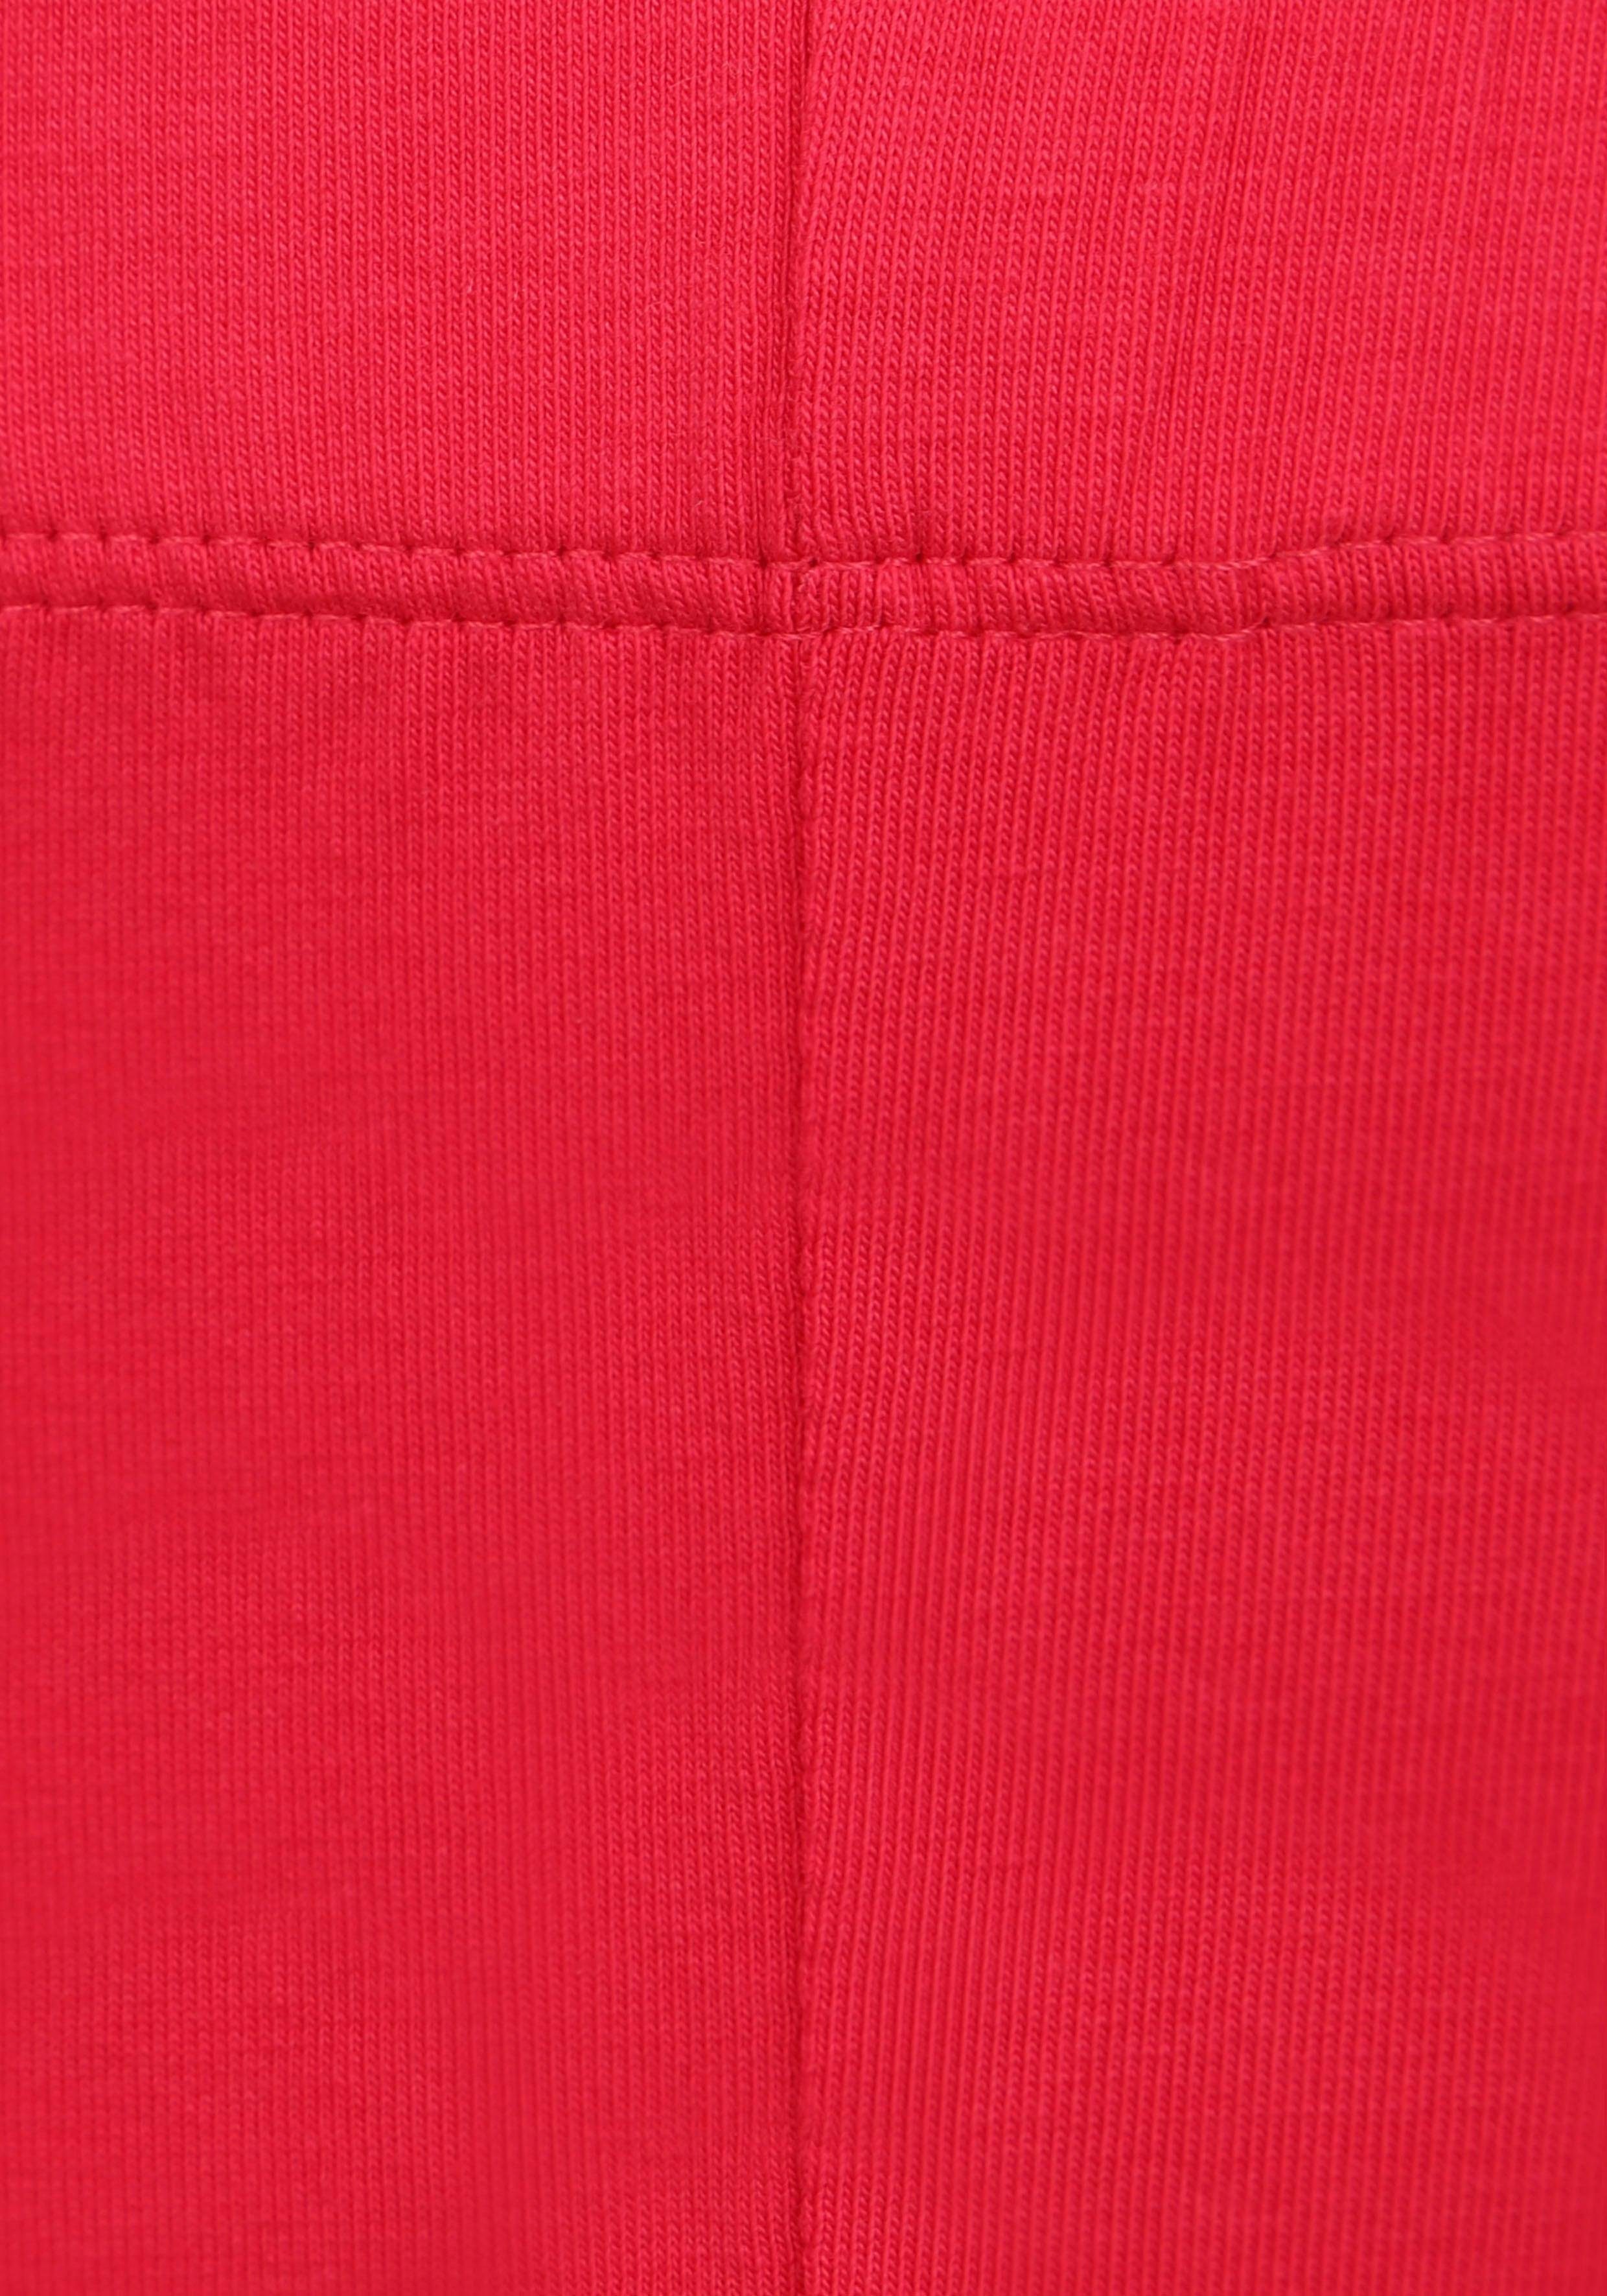 KIDSWORLD Leggings (2er-Pack) in 3/4 rot, weiß Länge